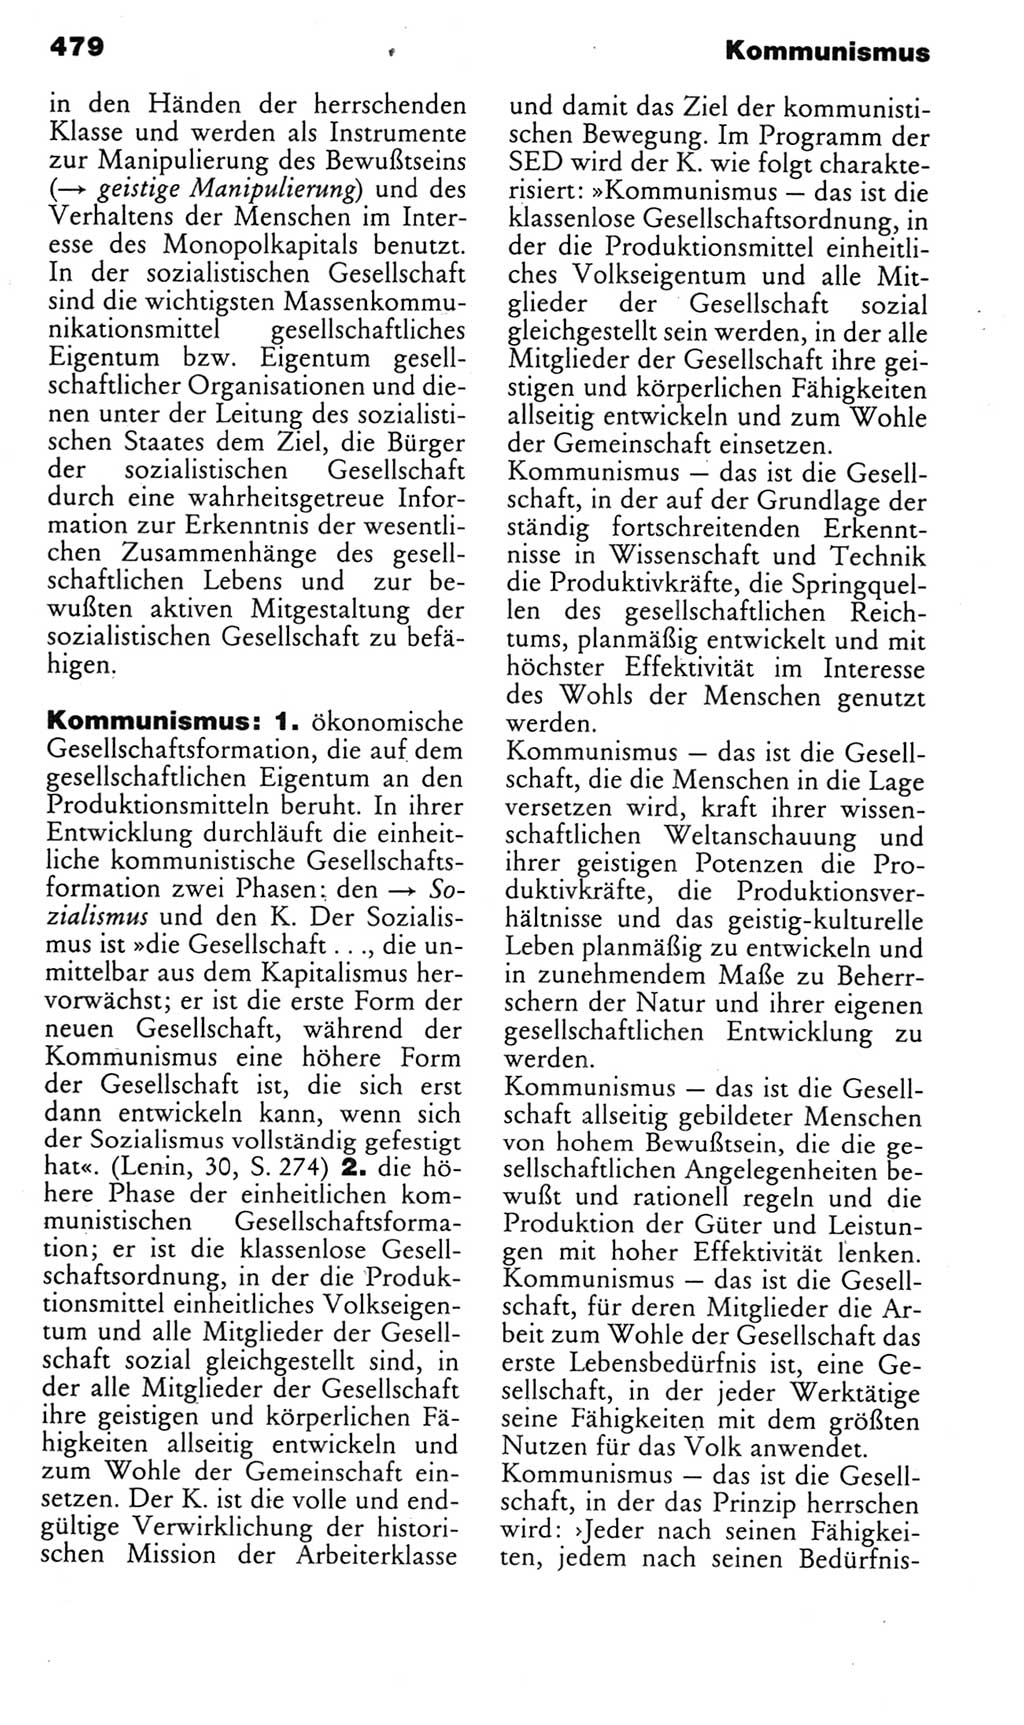 Kleines politisches Wörterbuch [Deutsche Demokratische Republik (DDR)] 1985, Seite 479 (Kl. pol. Wb. DDR 1985, S. 479)